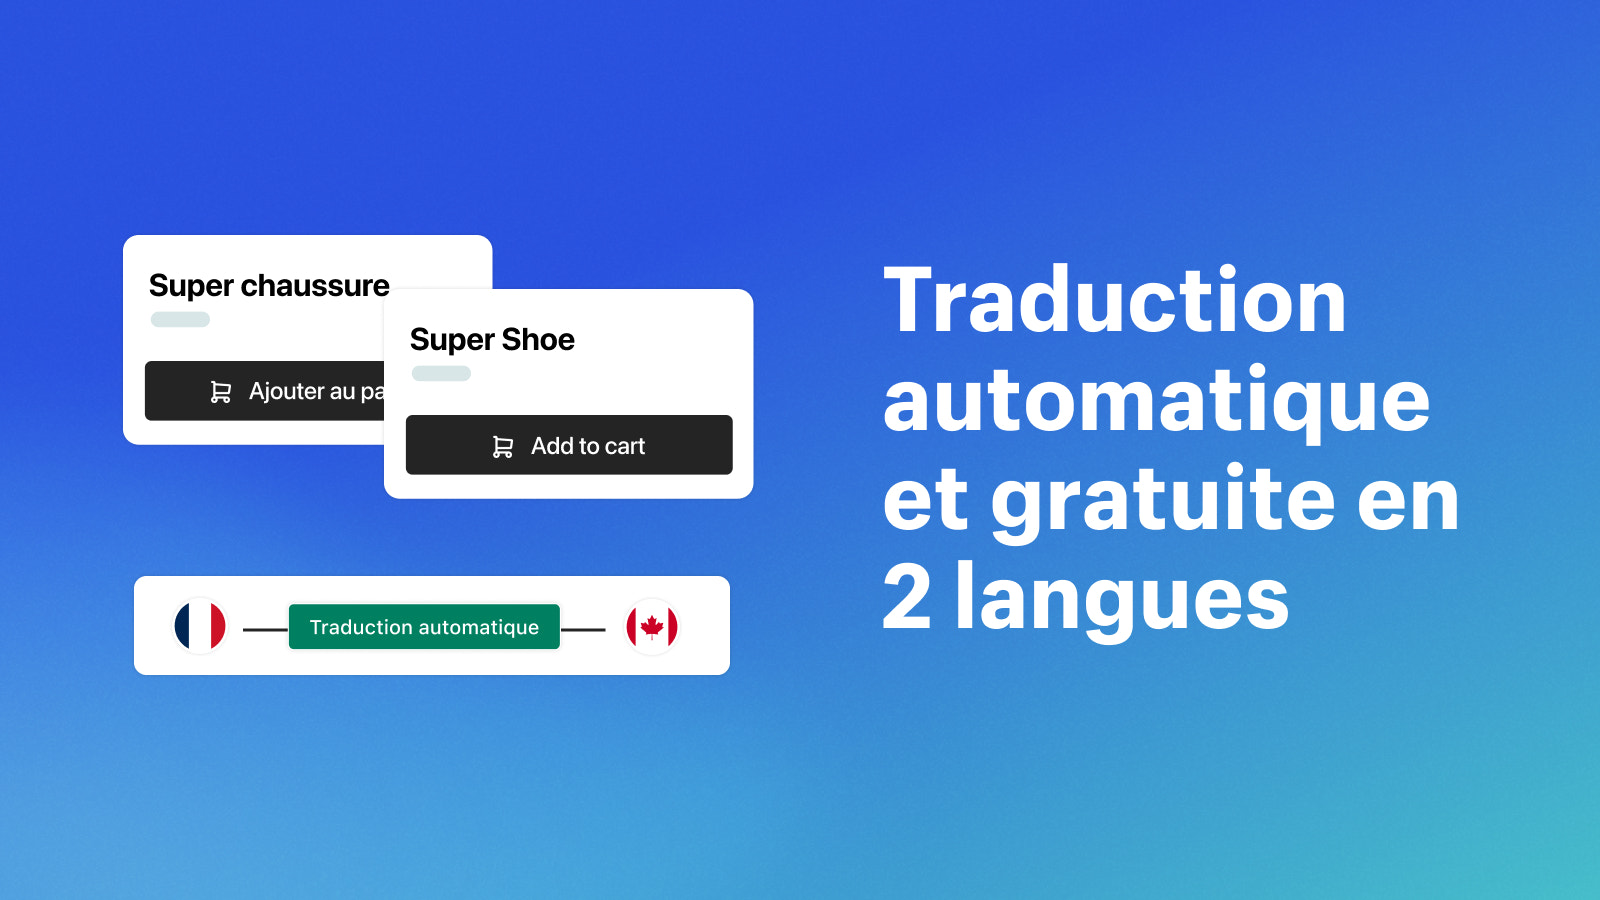 Traduction automatique et gratuite en 2 langues